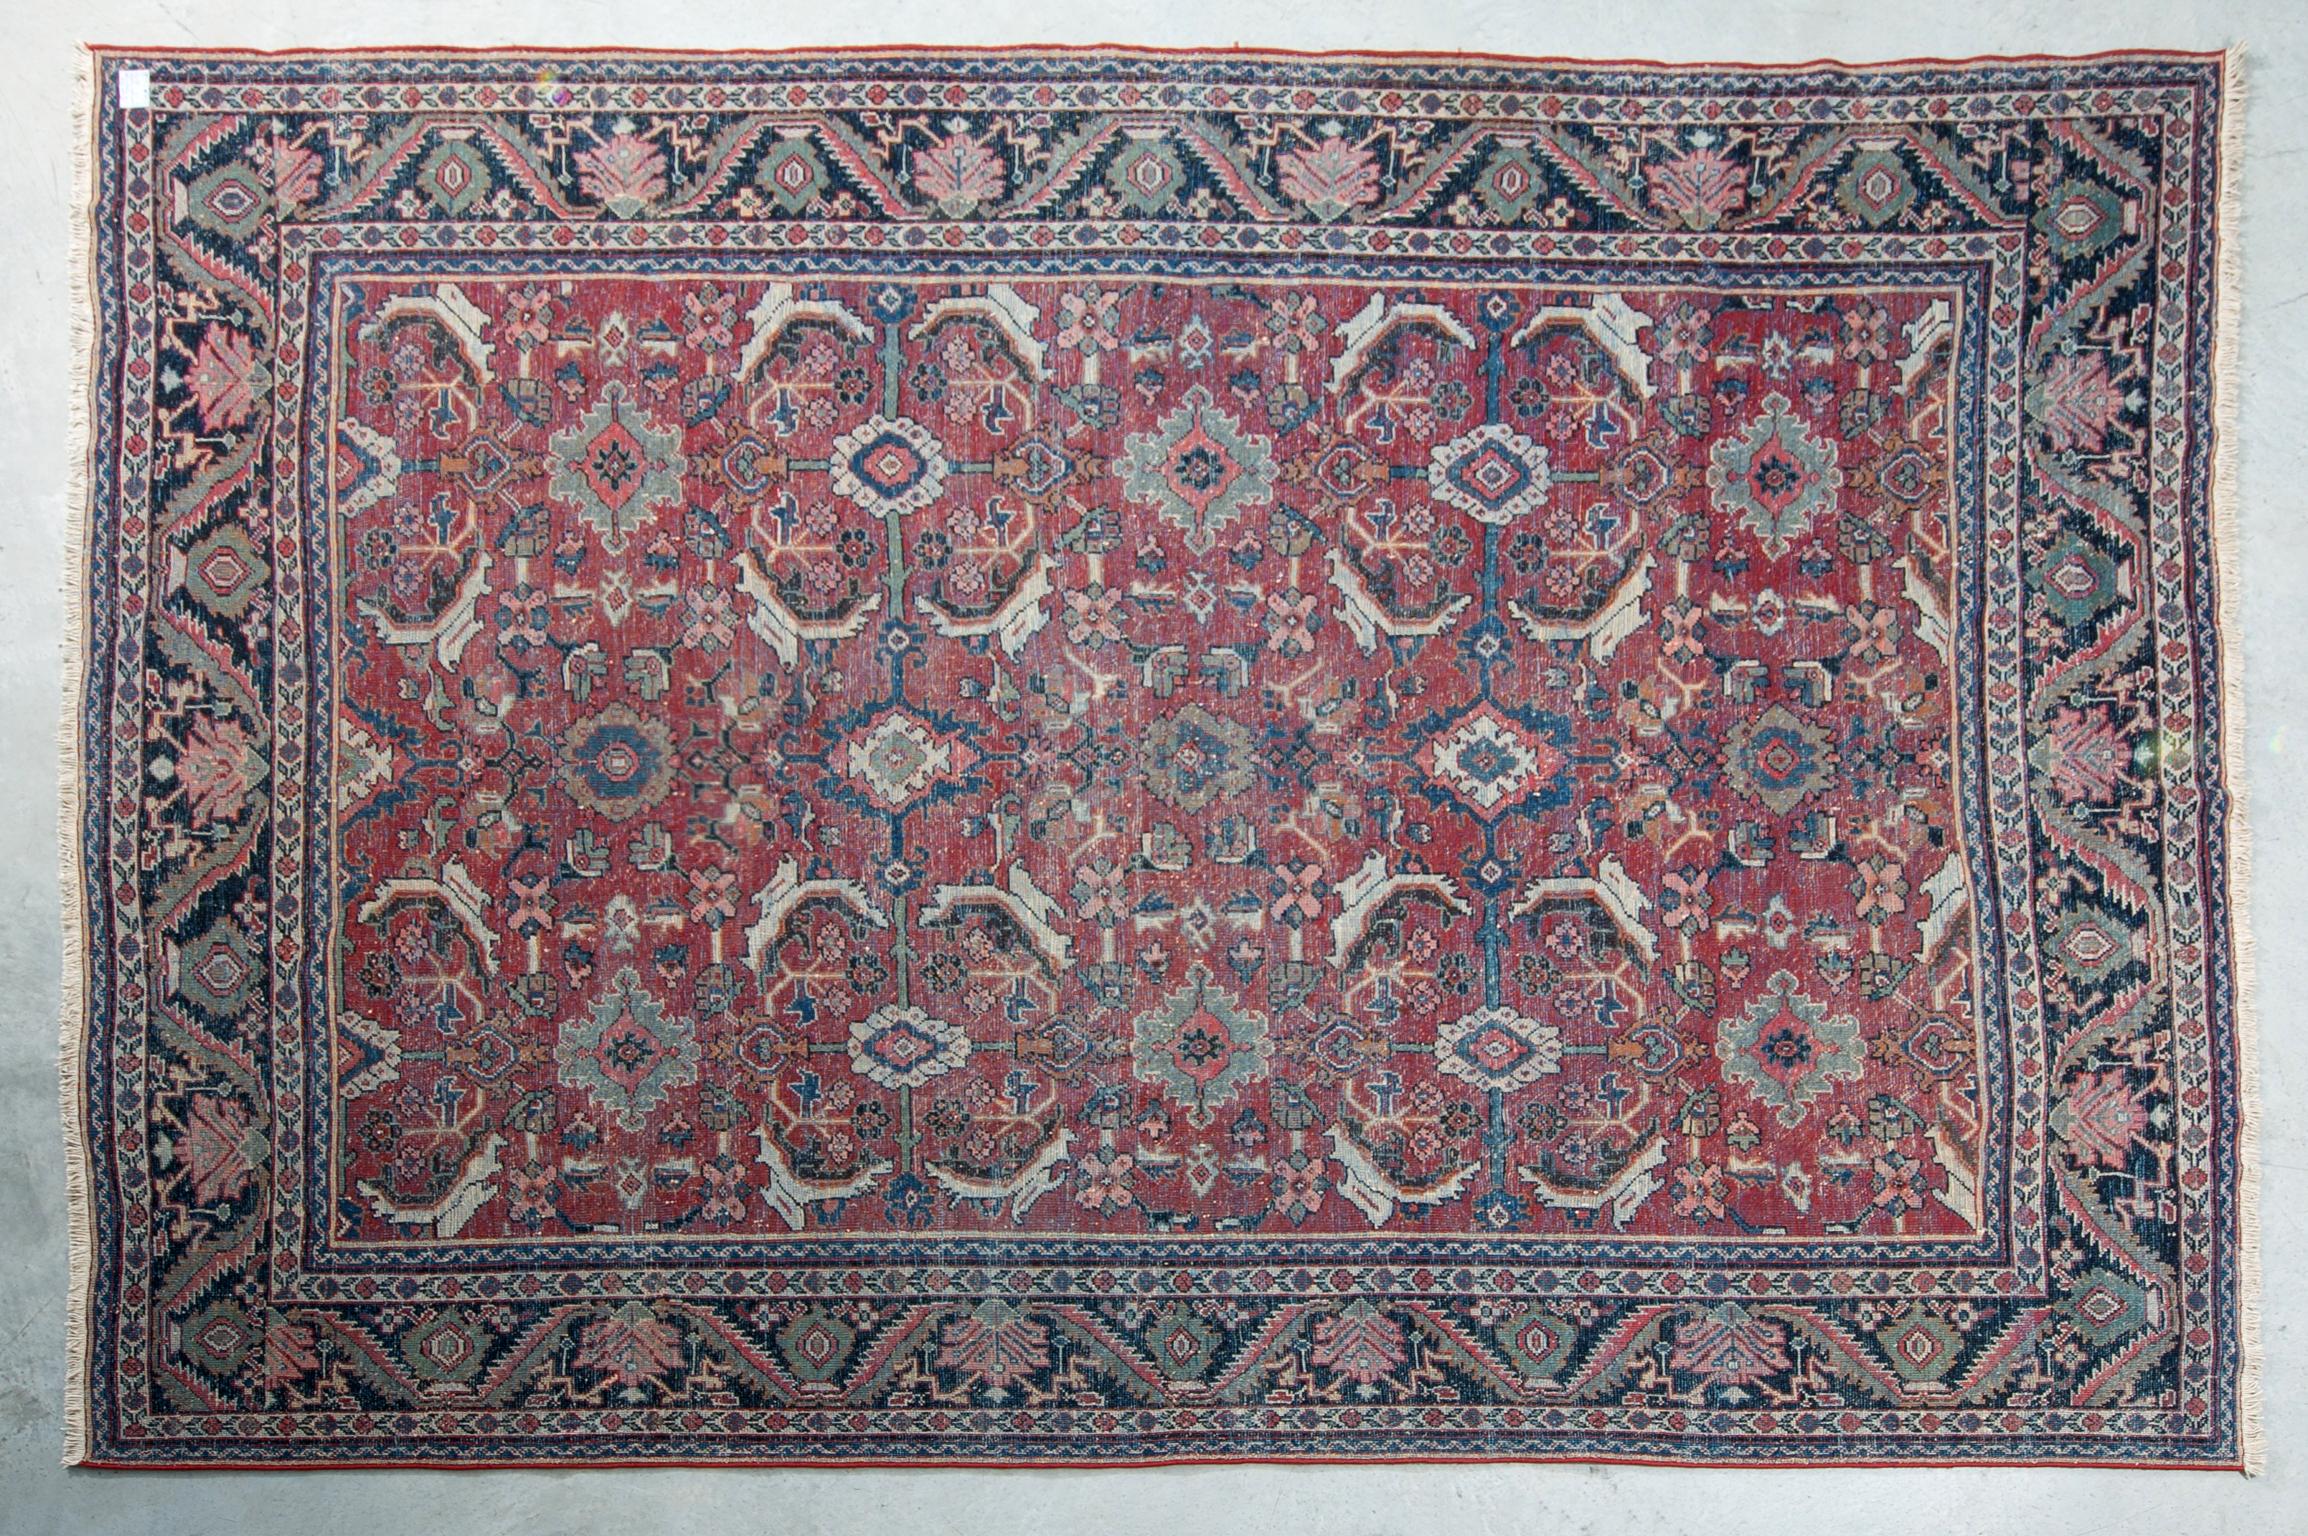 Hand-Knotted Old Large Elegant Garebagh Rug or Carpet